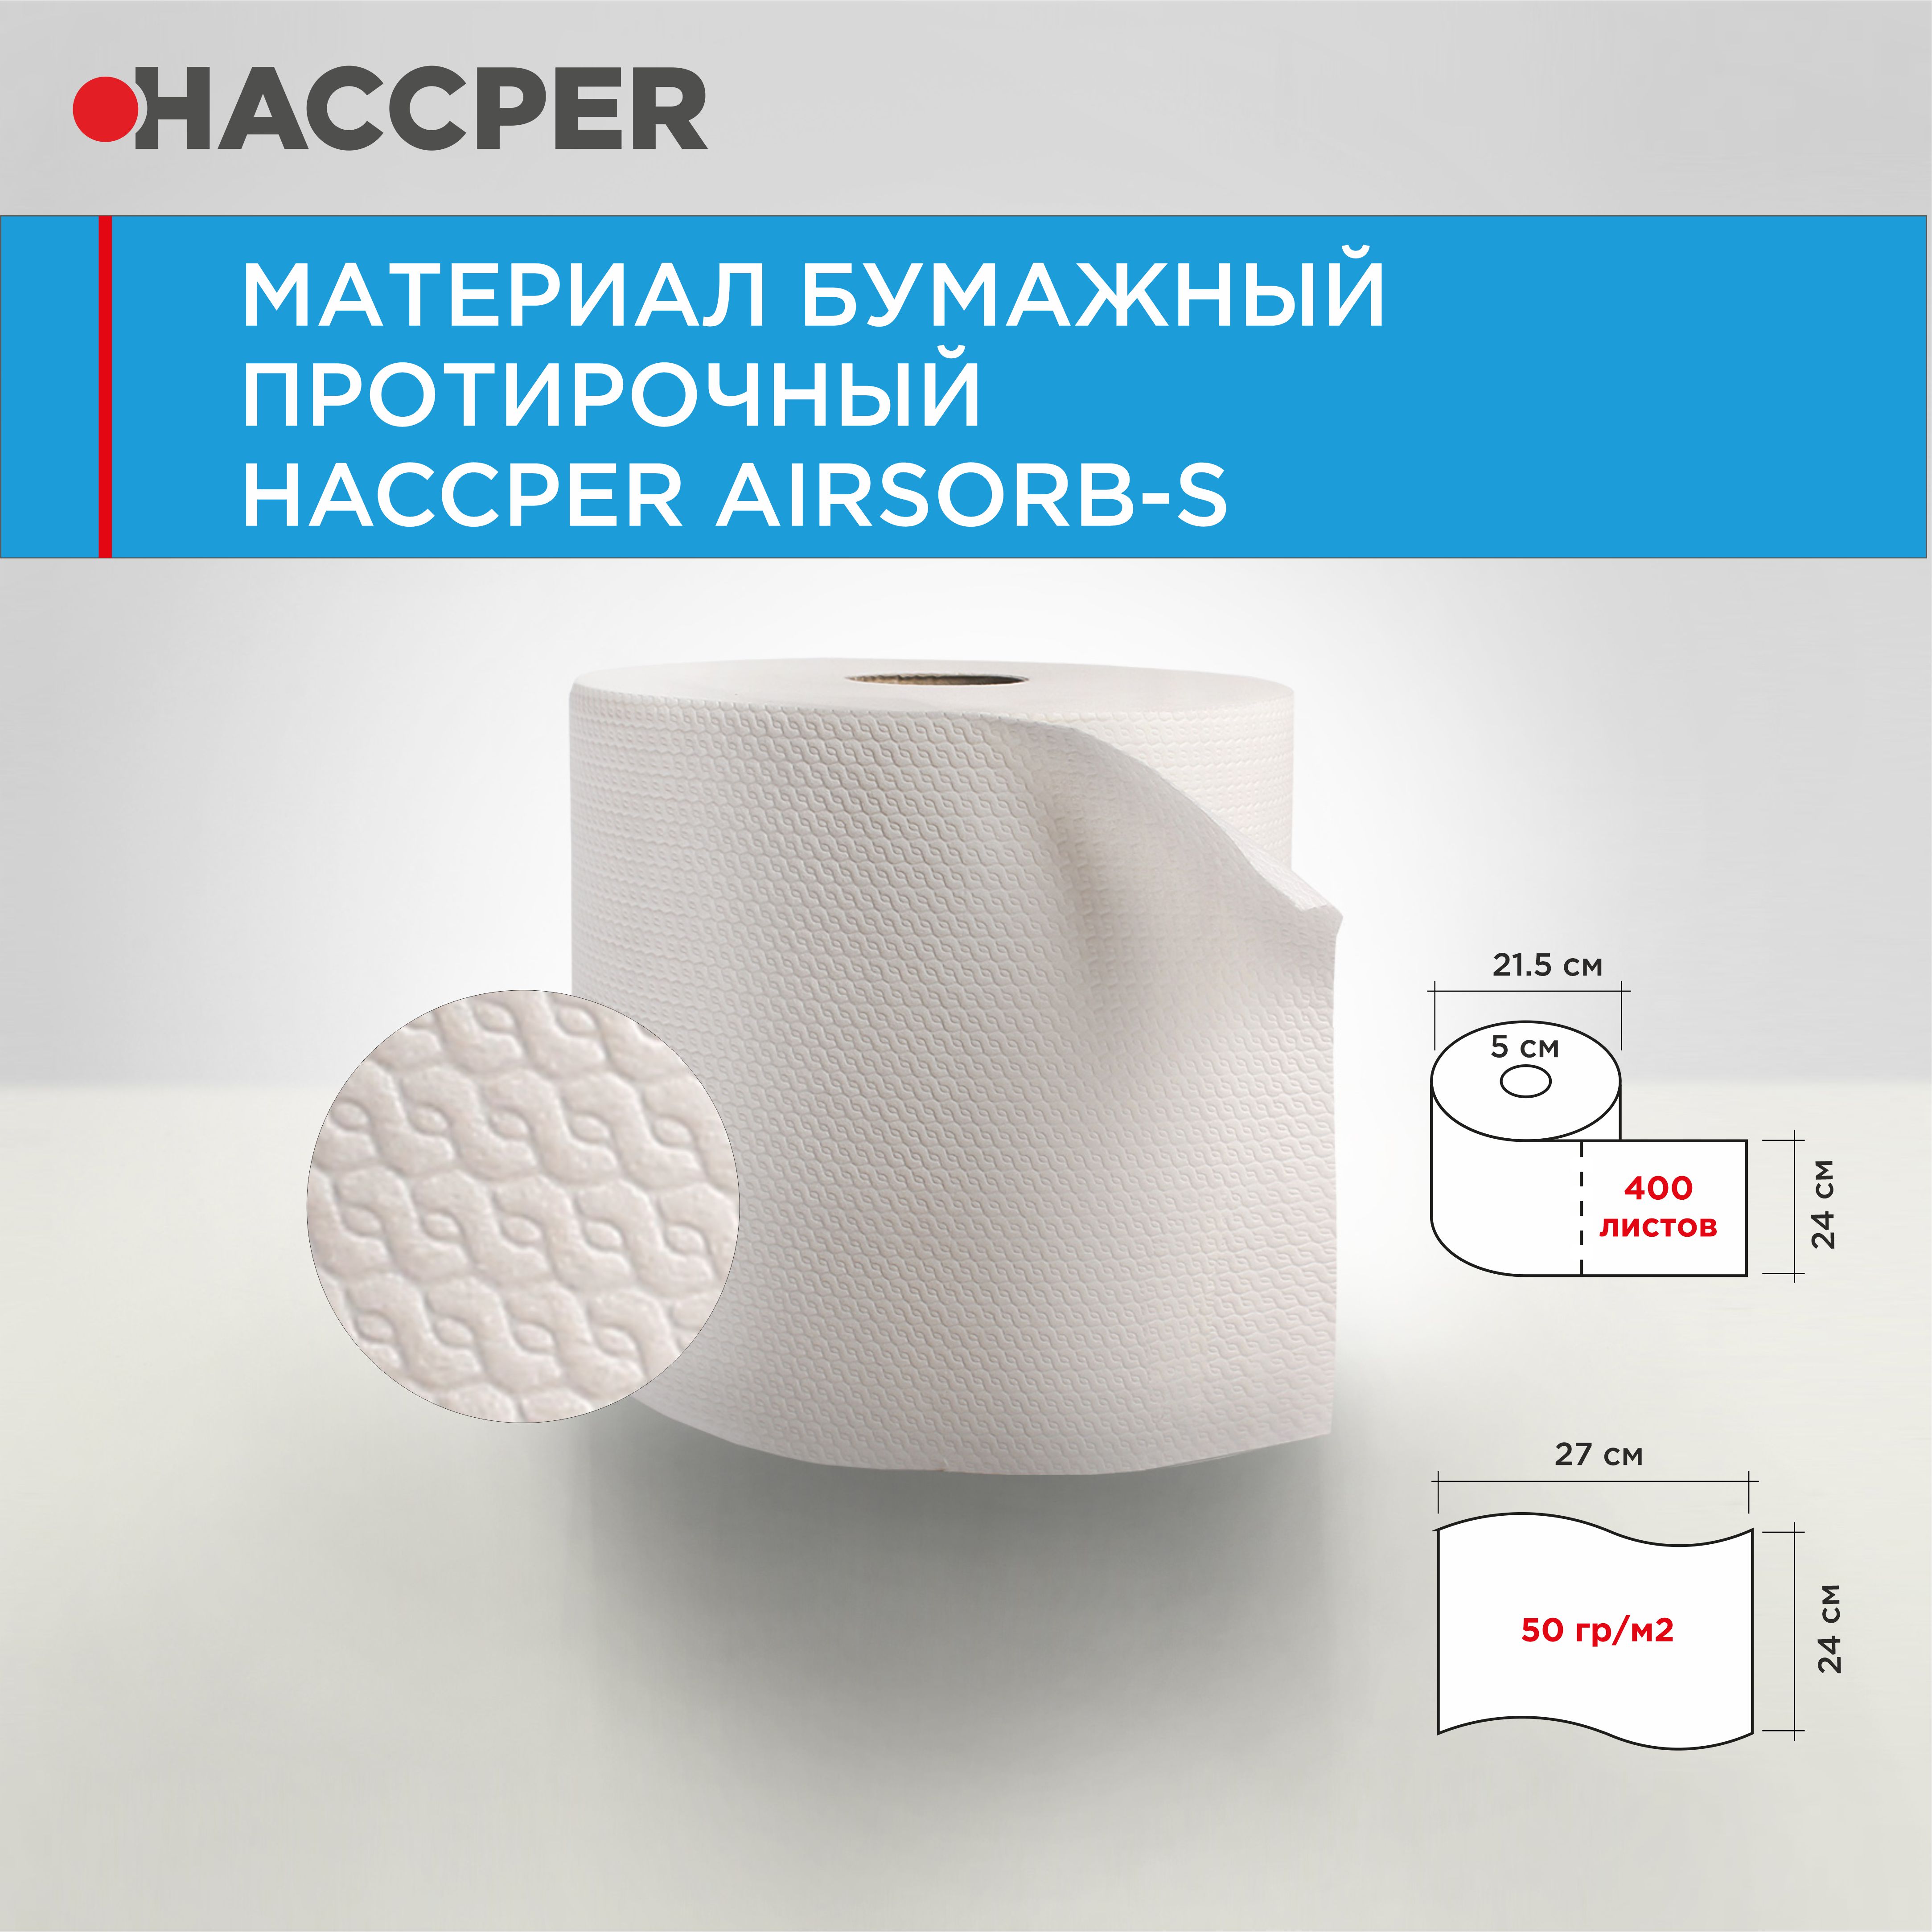 Материал бумажный протирочный HACCPER AIRSORB-S, 24*27 см, белый, 400л/рул